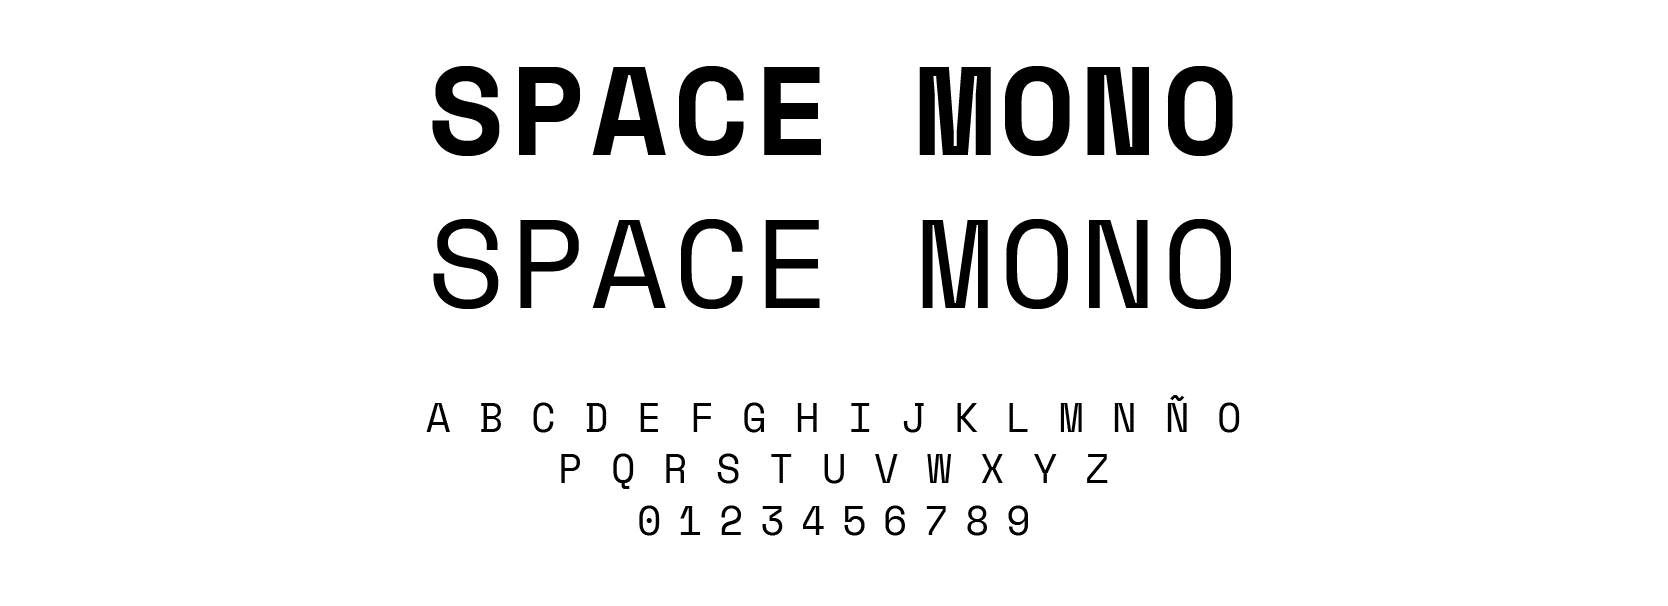 Space Mono - Le journal Du Marketing